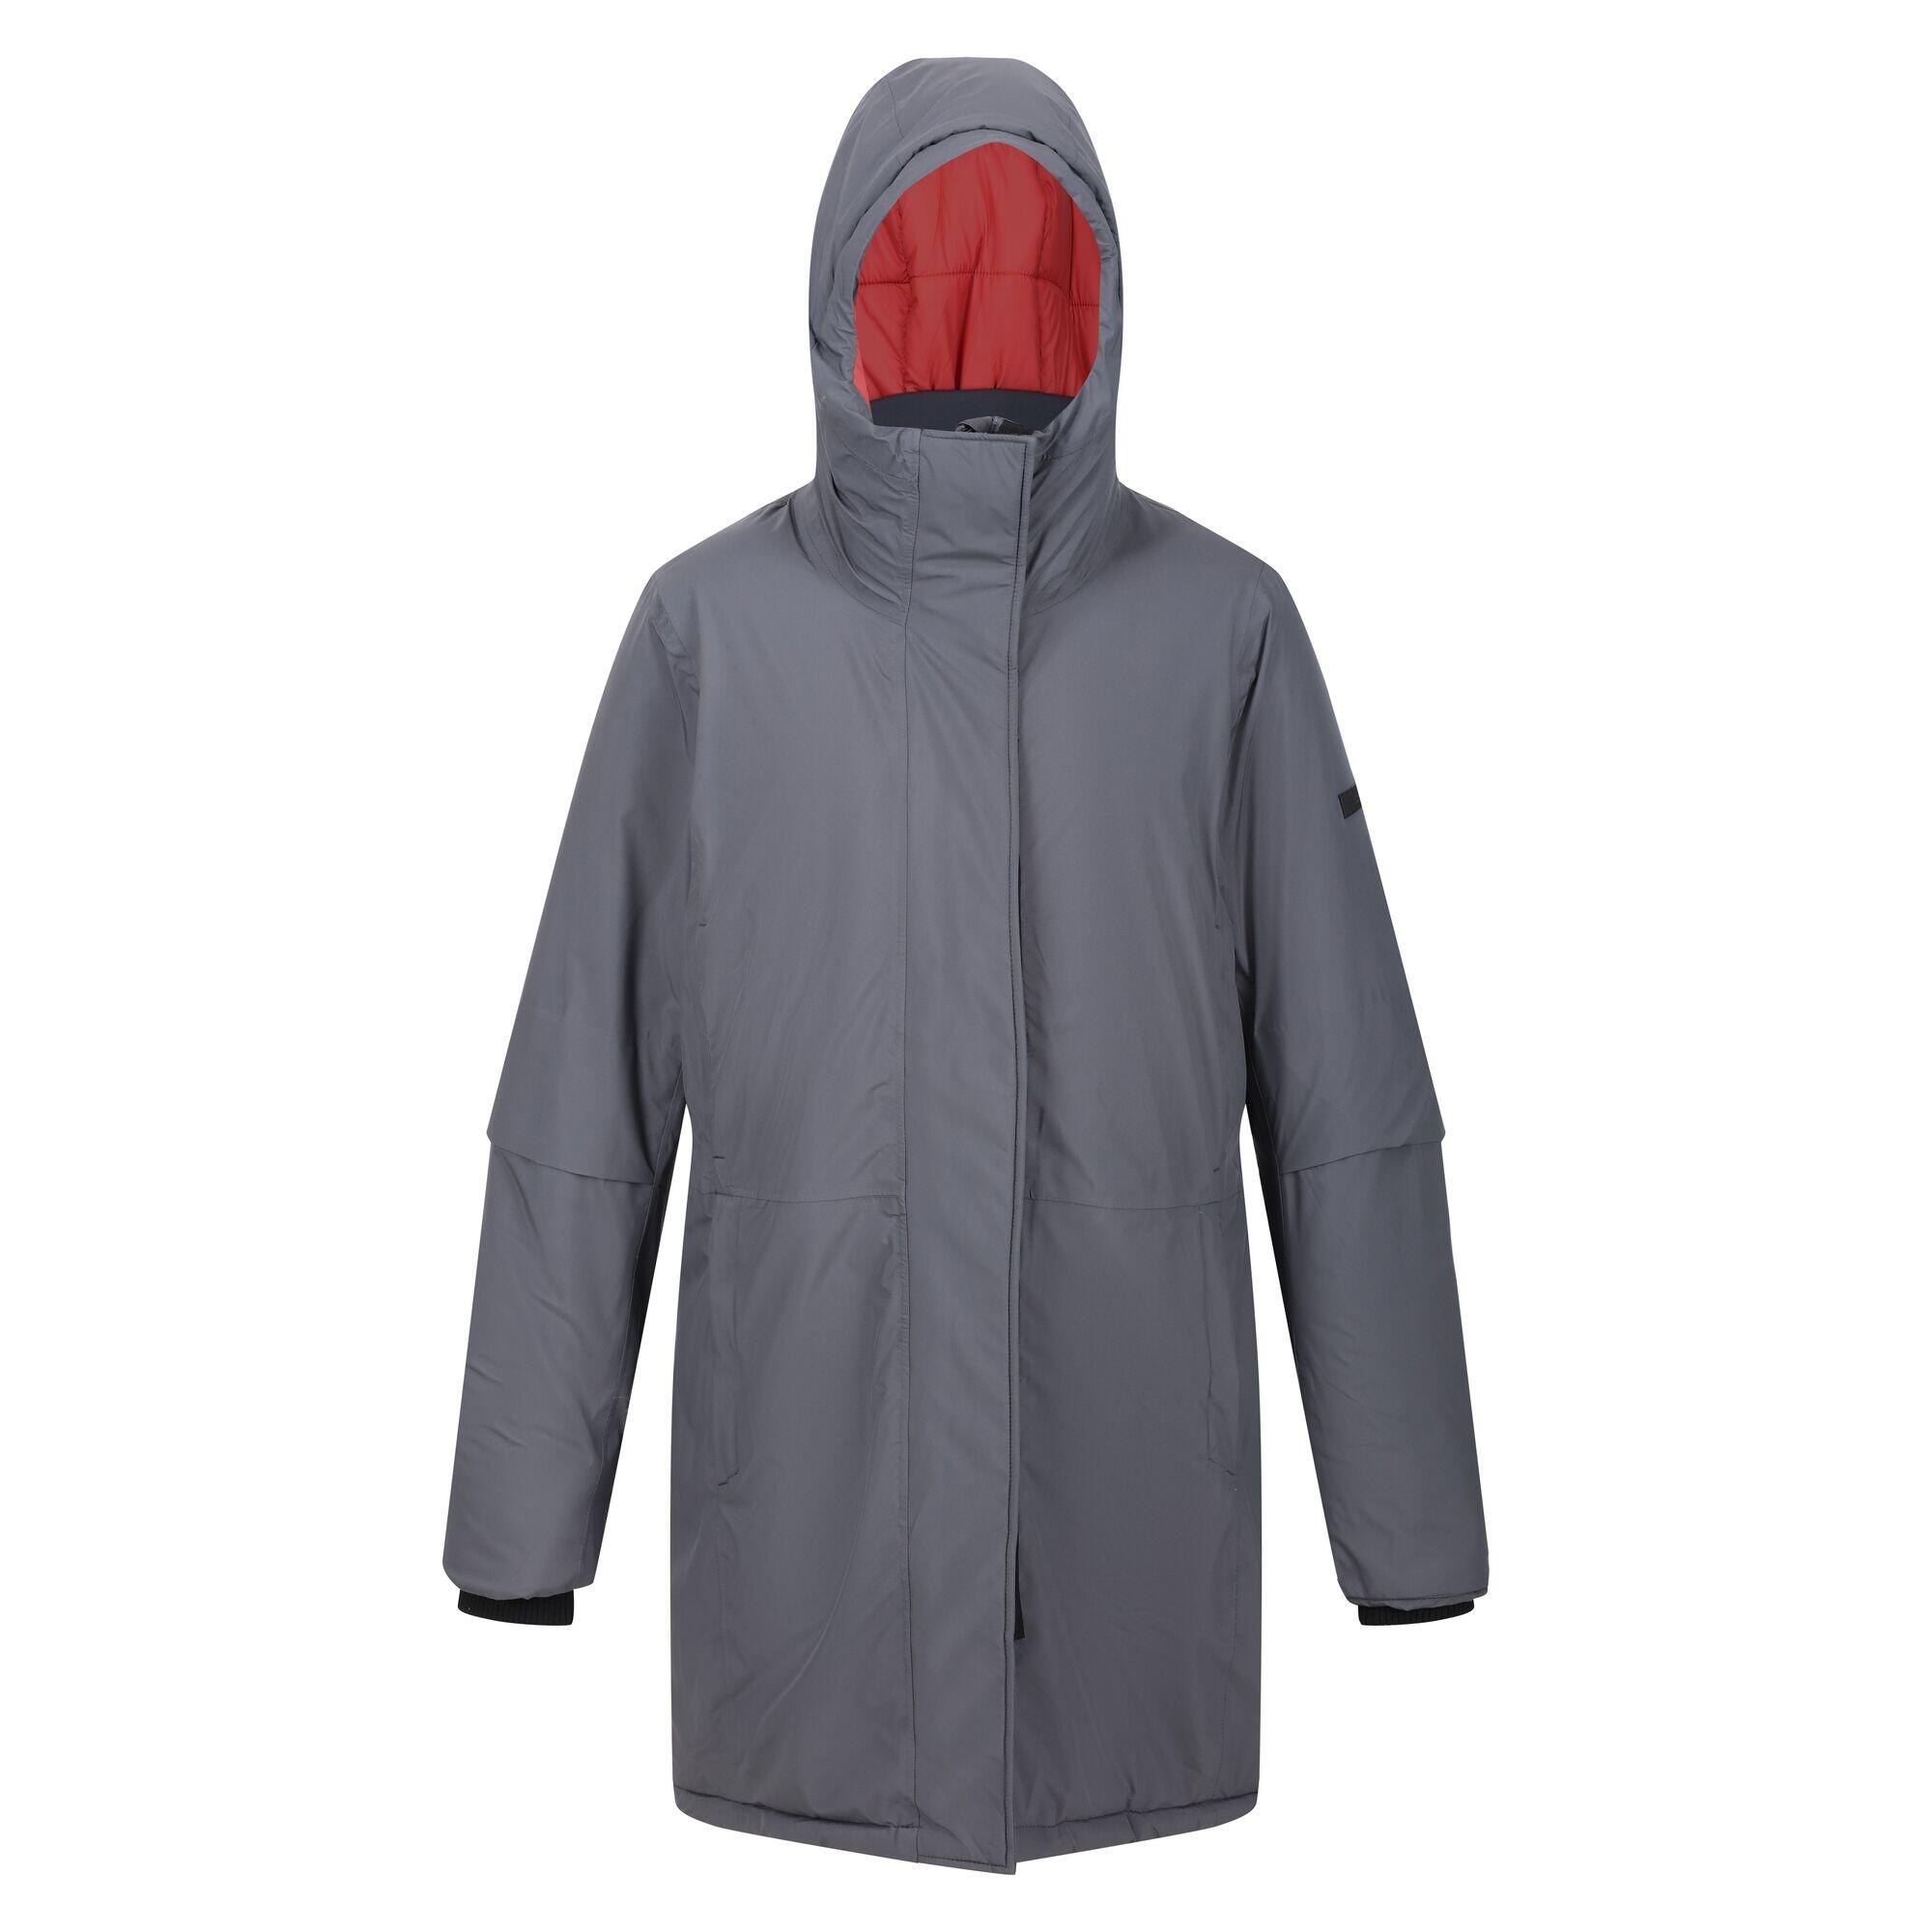 REGATTA Womens/Ladies Yewbank III Waterproof Jacket (Seal Grey/Mineral Red)